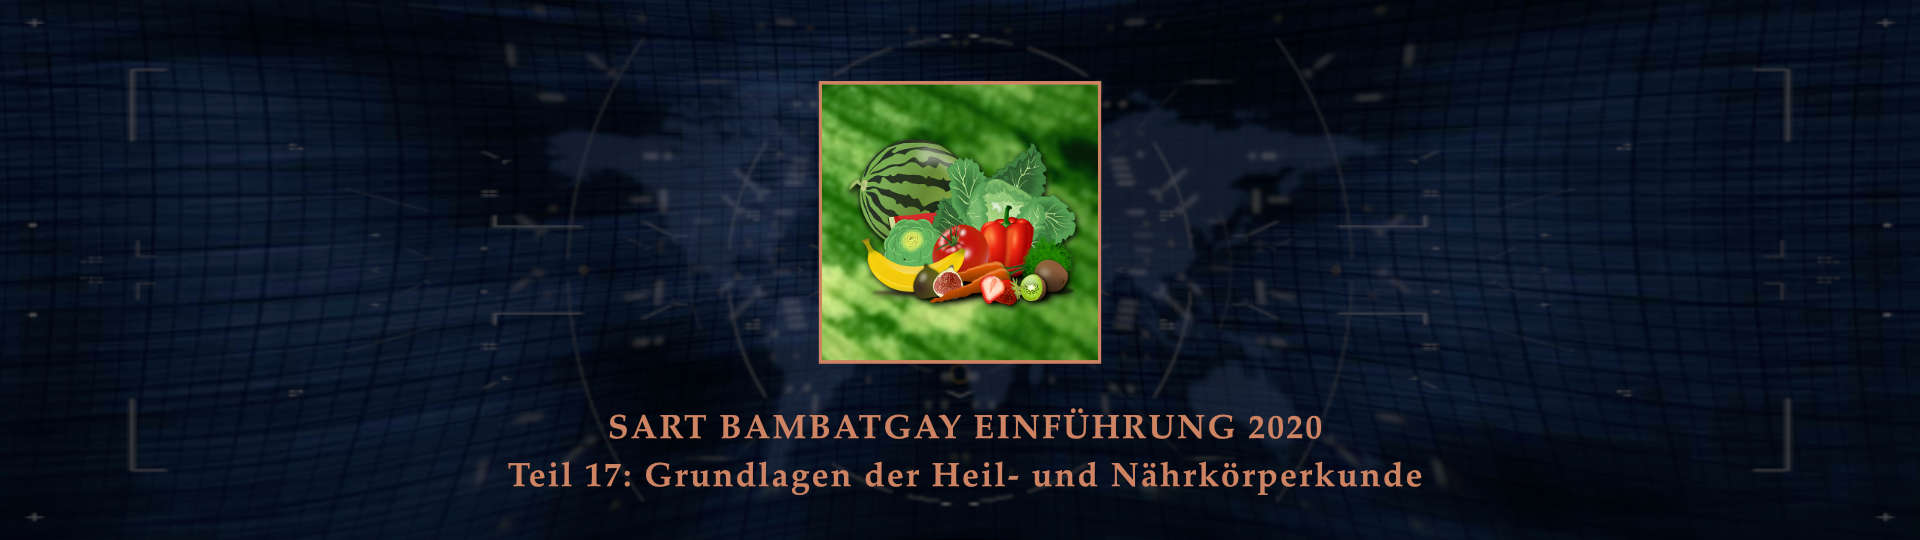 Sart bambatgay einfuehrung 2020 teil 17 grundlagen der heil und naehrkoerperkunde BANNER